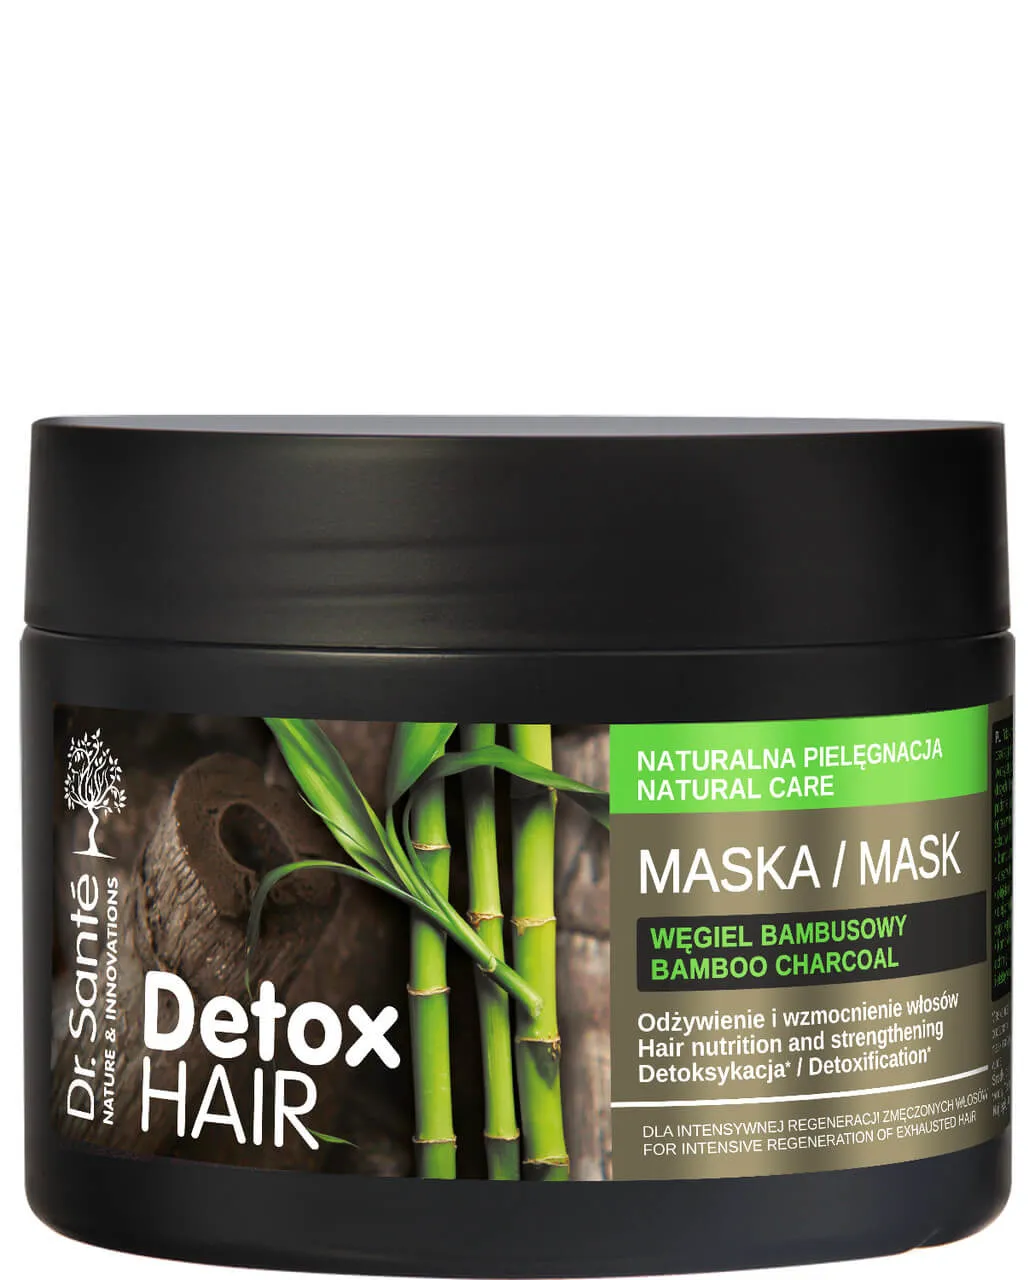 Dr Sante Detox Hair, maska do włosów, 300 ml